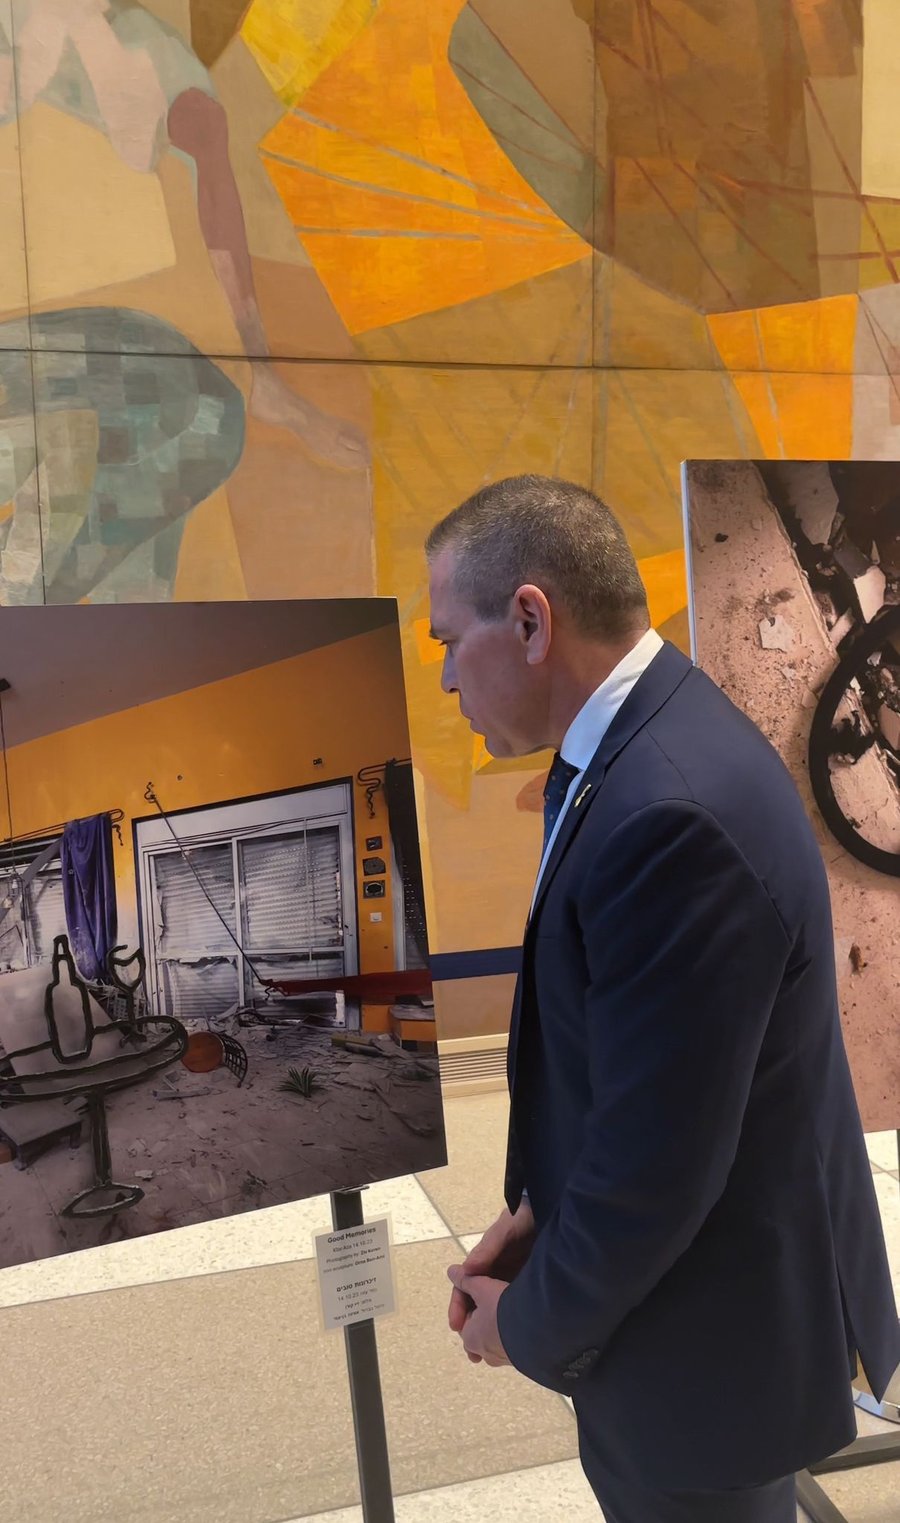 בכניסה לאו"ם: תערוכה המציגה את זוועות החמאס | צפו